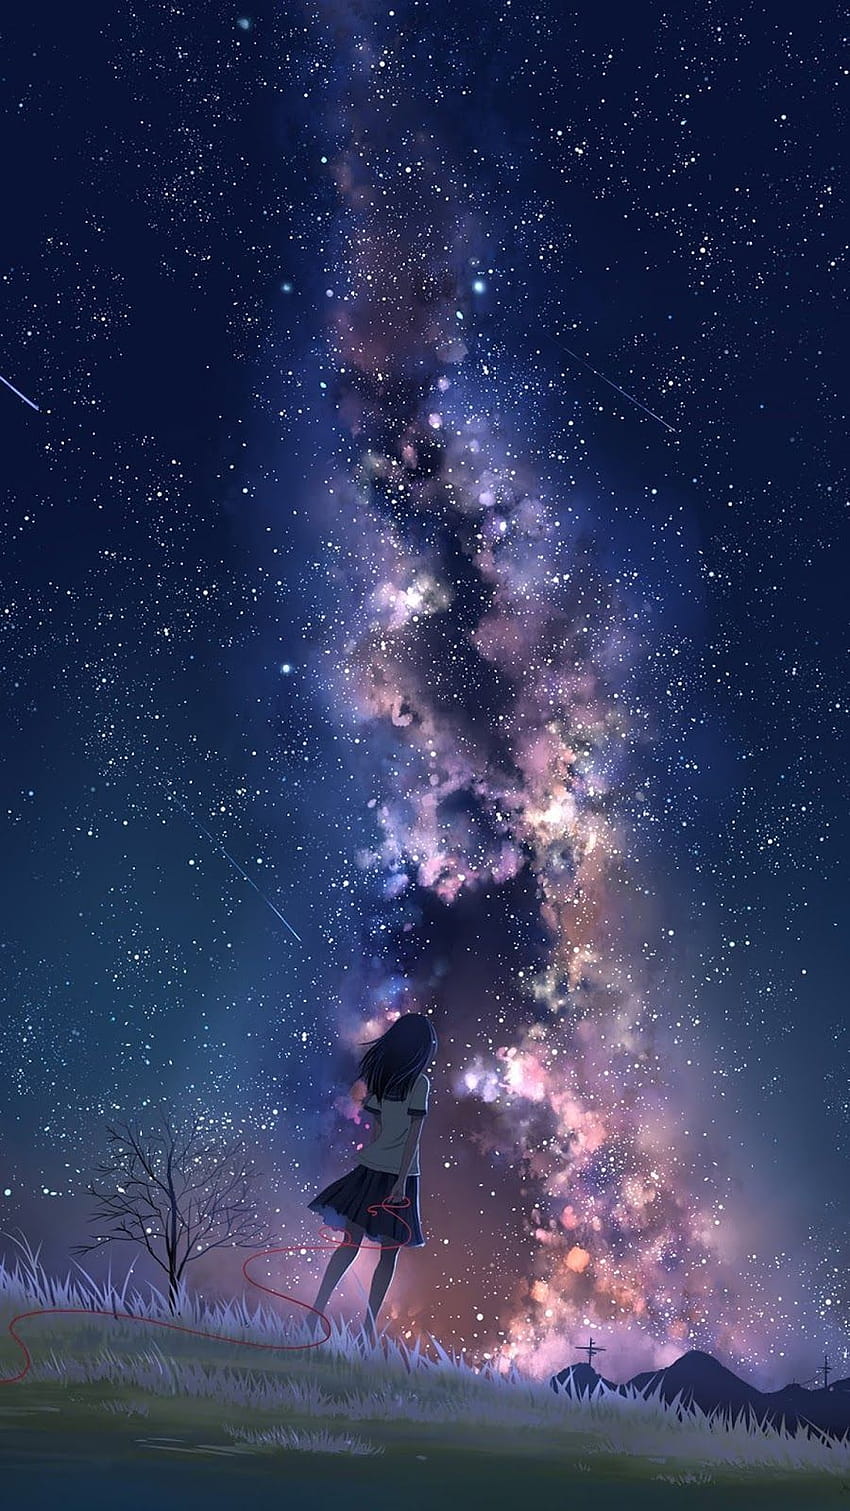 Khám phá không gian bao la, lãng mạn cùng bộ sưu tập hình nền Milky way đẹp mê mờ. Để tâm trí được xoa dịu, thả lơi giữa những chùm sao rực rỡ trên màn hình điện thoại.